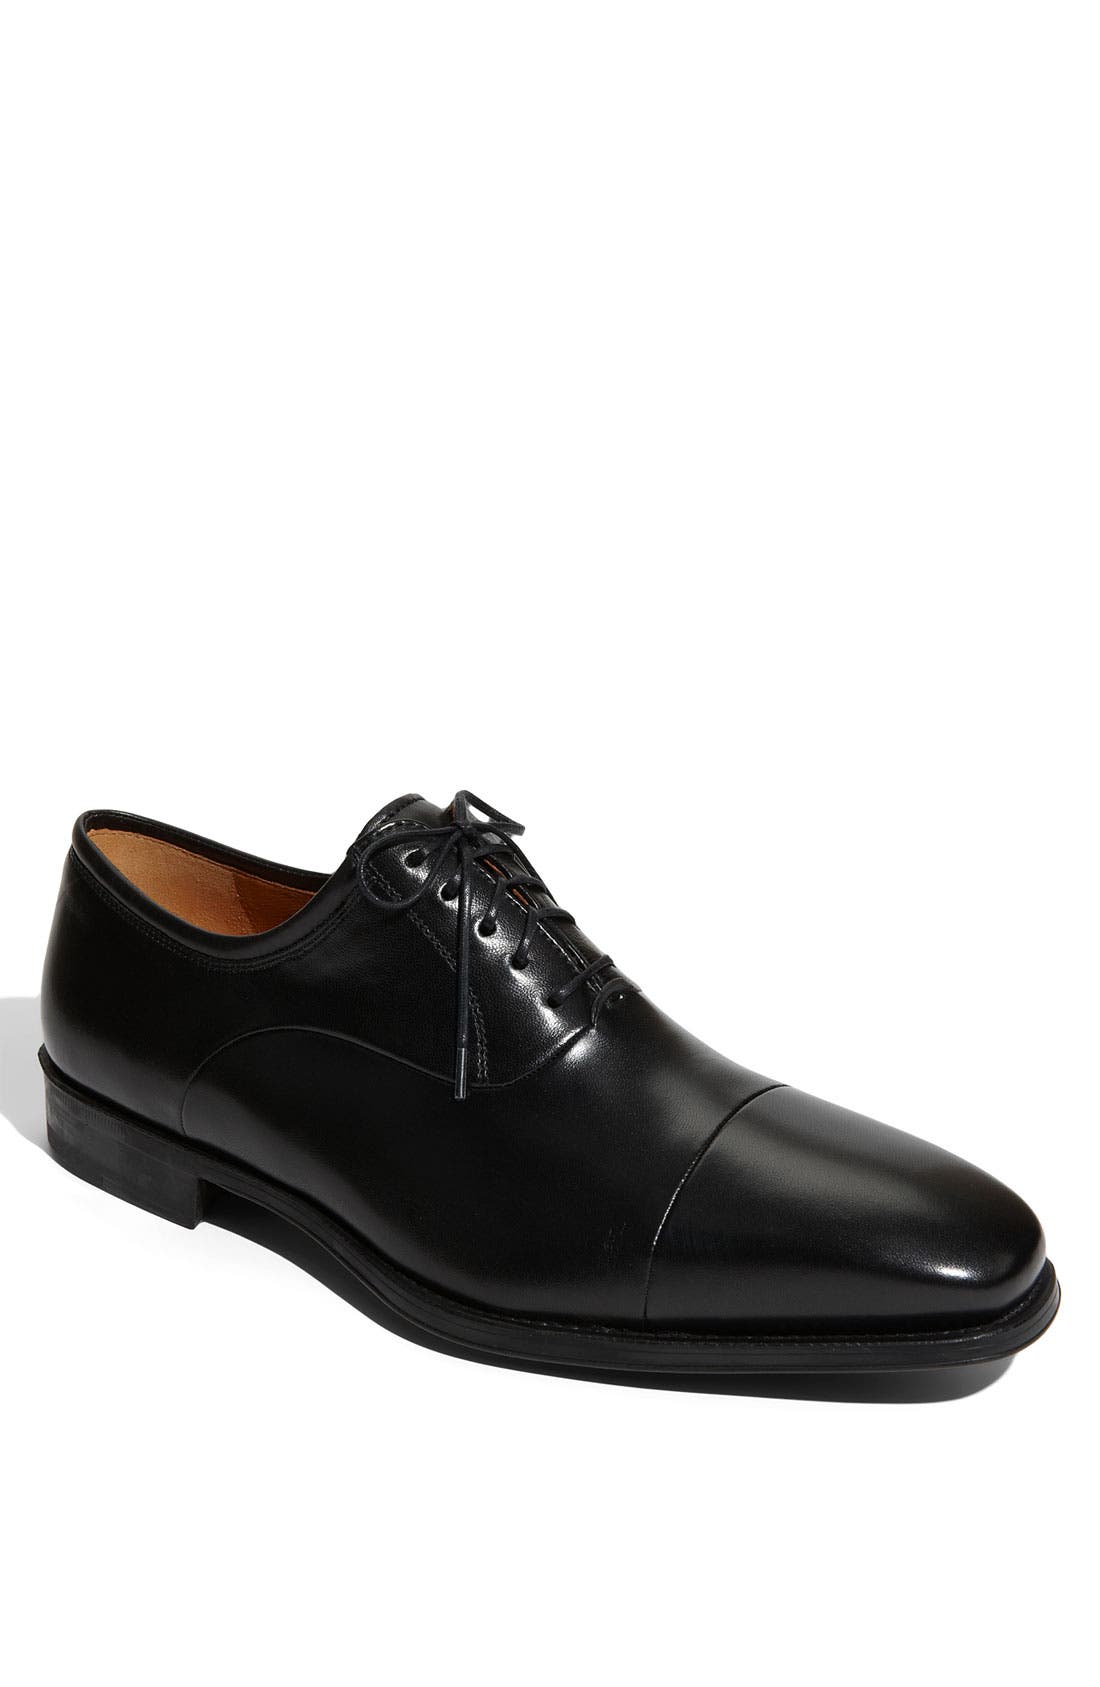 magnanni black dress shoes